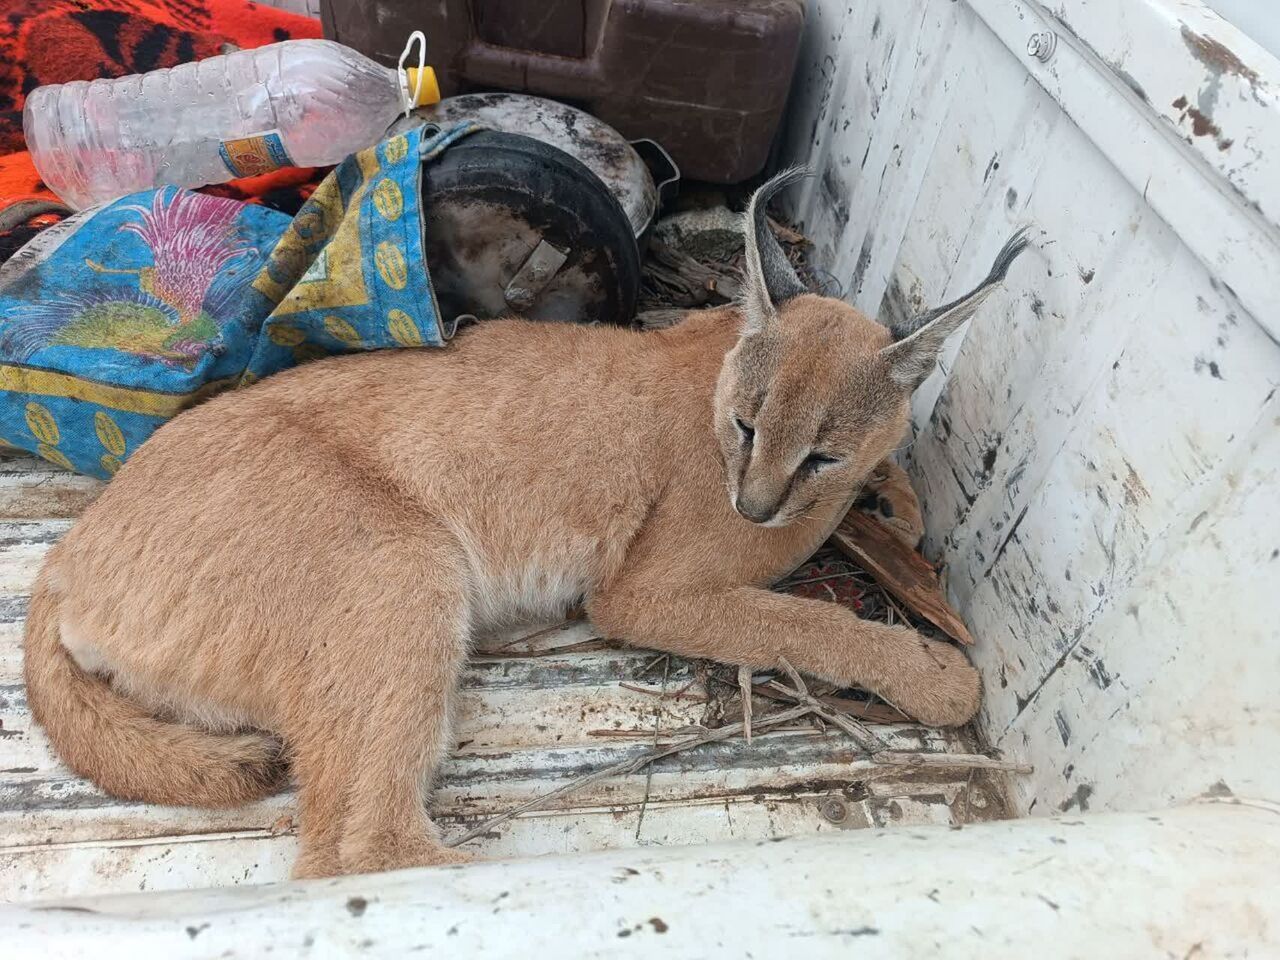 نجات یک گربه سان کمیاب در جنوب کرمان